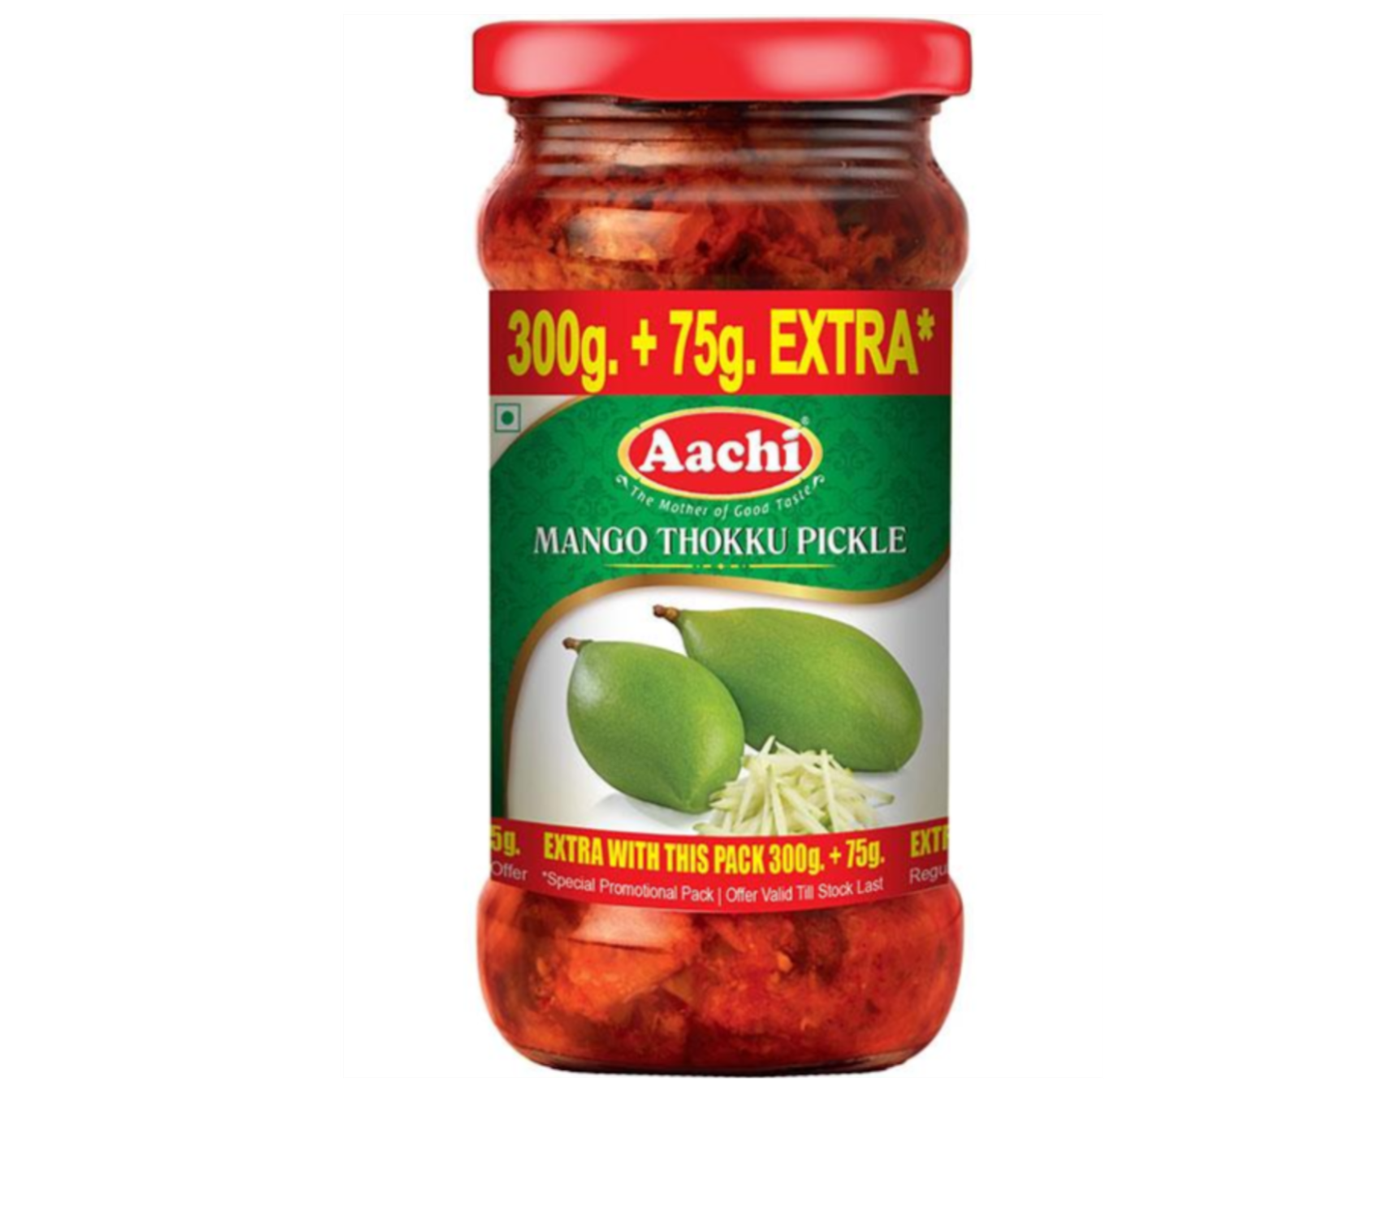 Aachi Mango Thokku Pickle